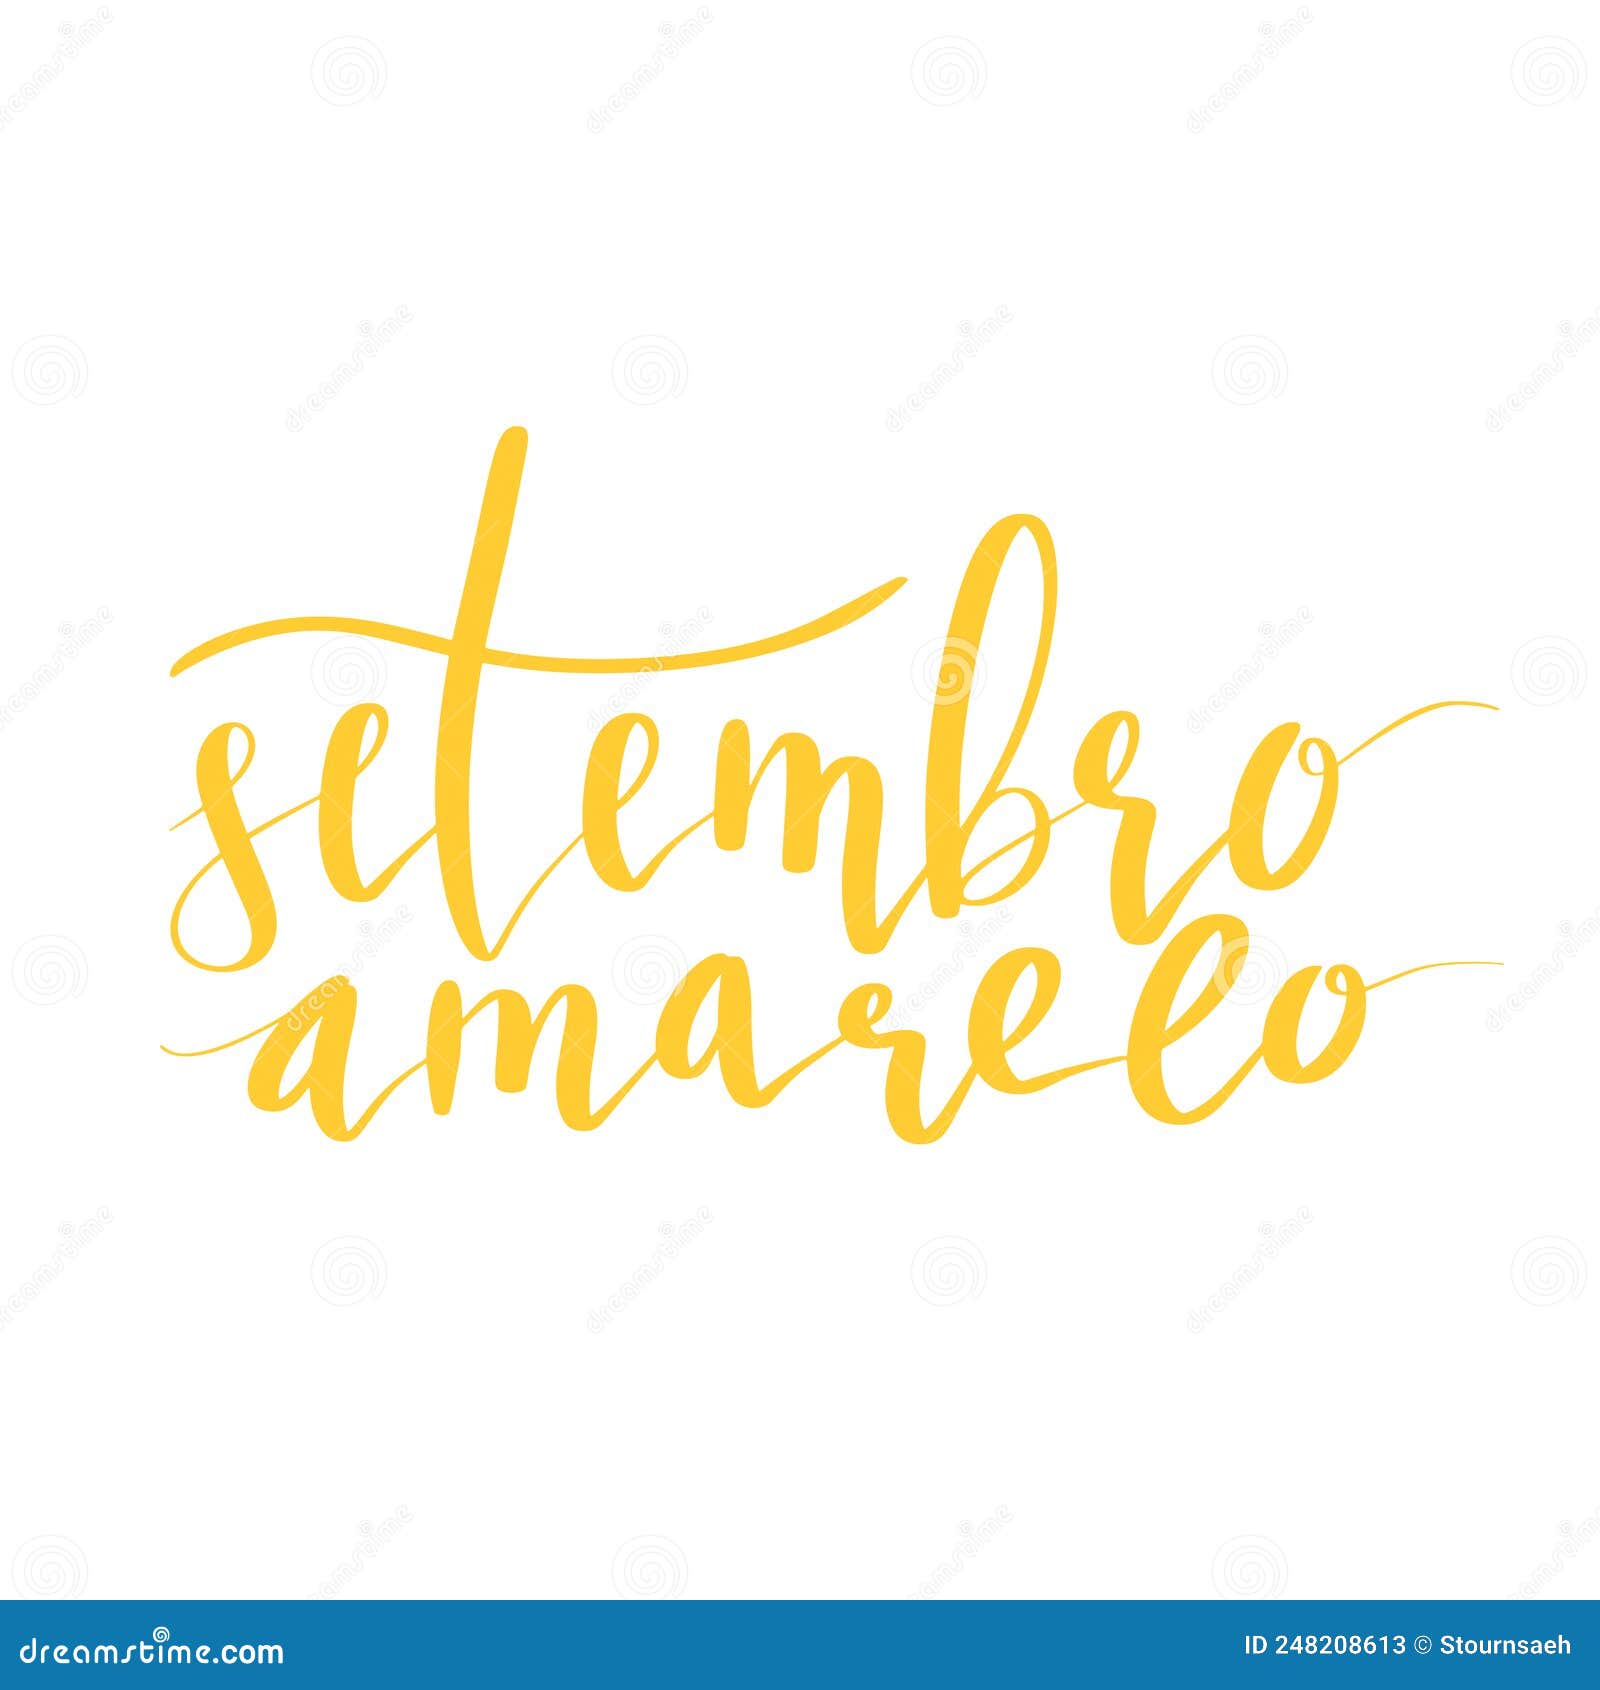 setembro amarelo - yellow sempteber in portuguese, brazillian, suicide prevention month. hand lettering 